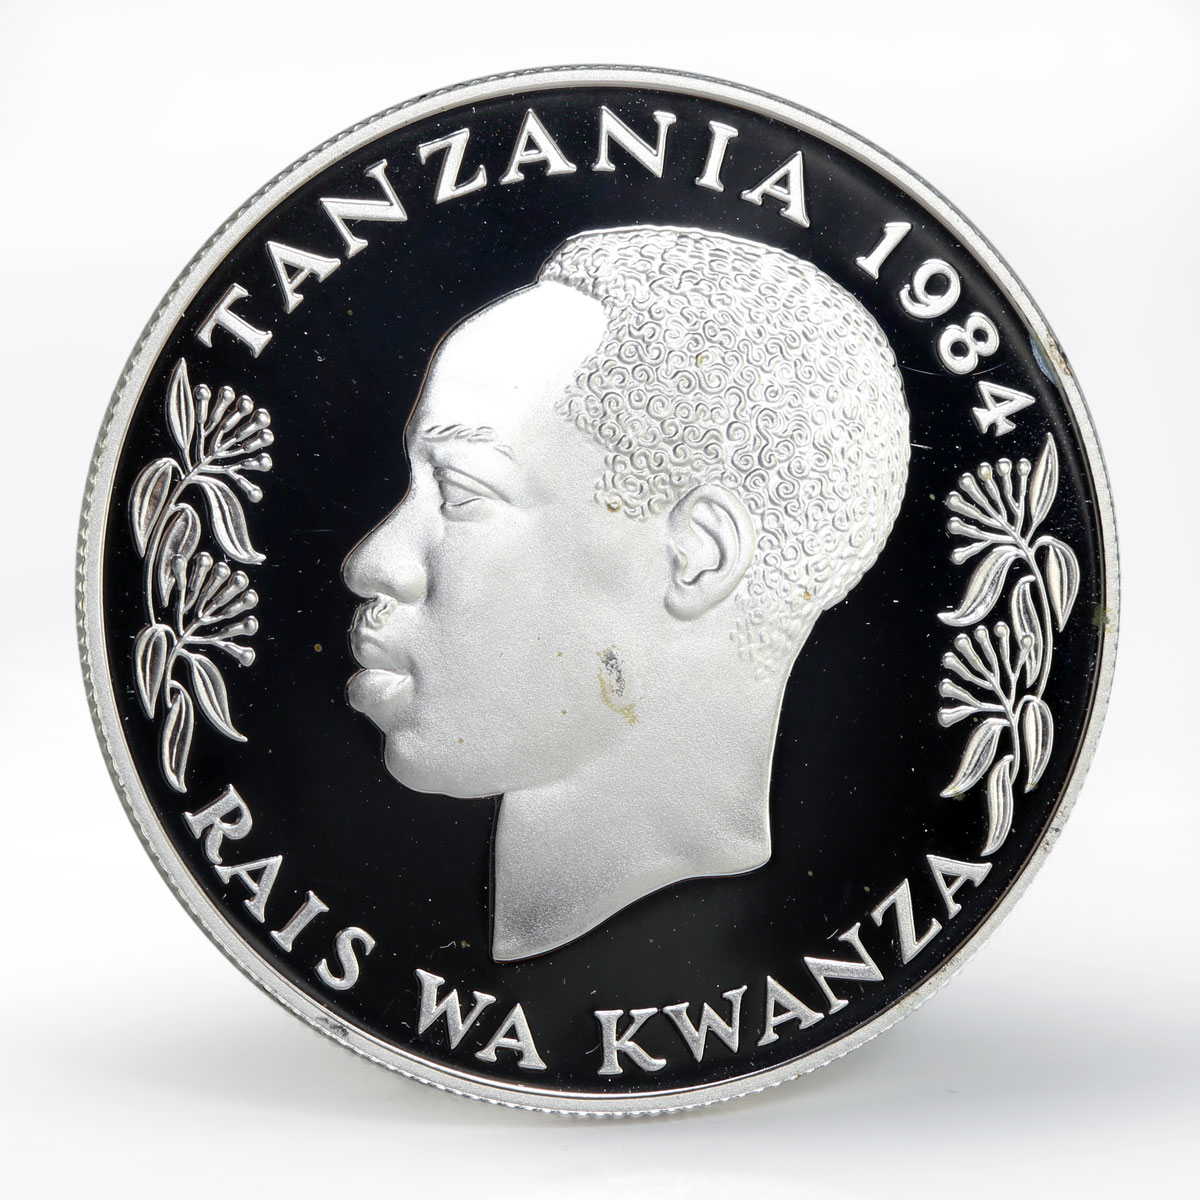 Tanzania 100 shilingi United Decade for Women proof silver coin 1984